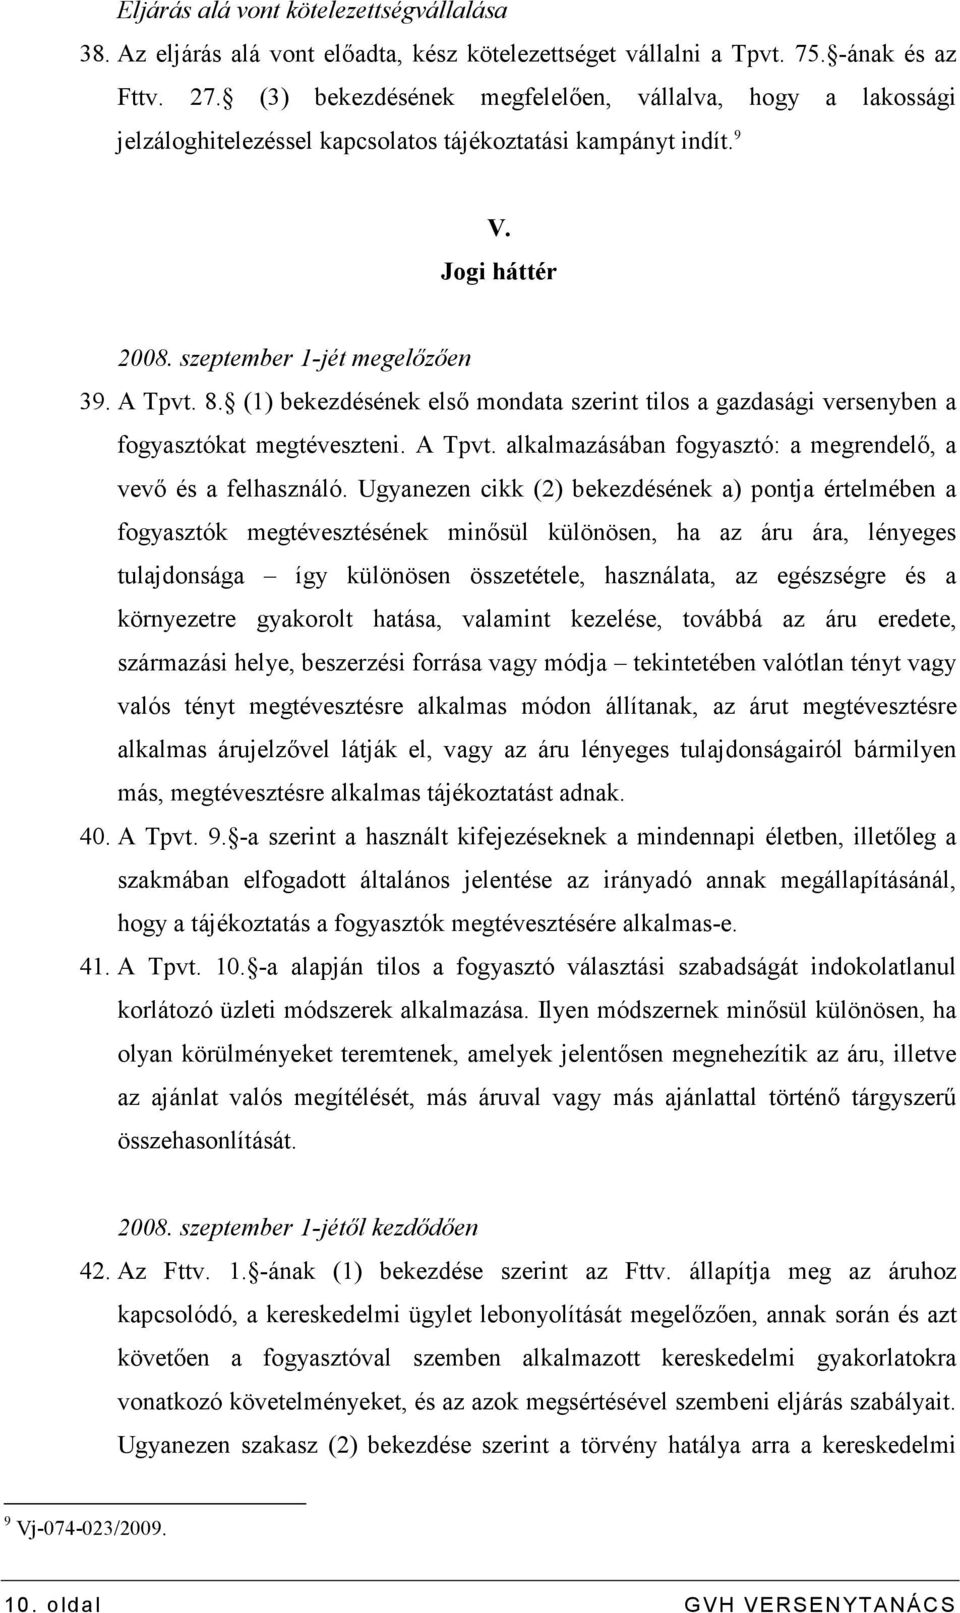 (1) bekezdésének elsı mondata szerint tilos a gazdasági versenyben a fogyasztókat megtéveszteni. A Tpvt. alkalmazásában fogyasztó: a megrendelı, a vevı és a felhasználó.